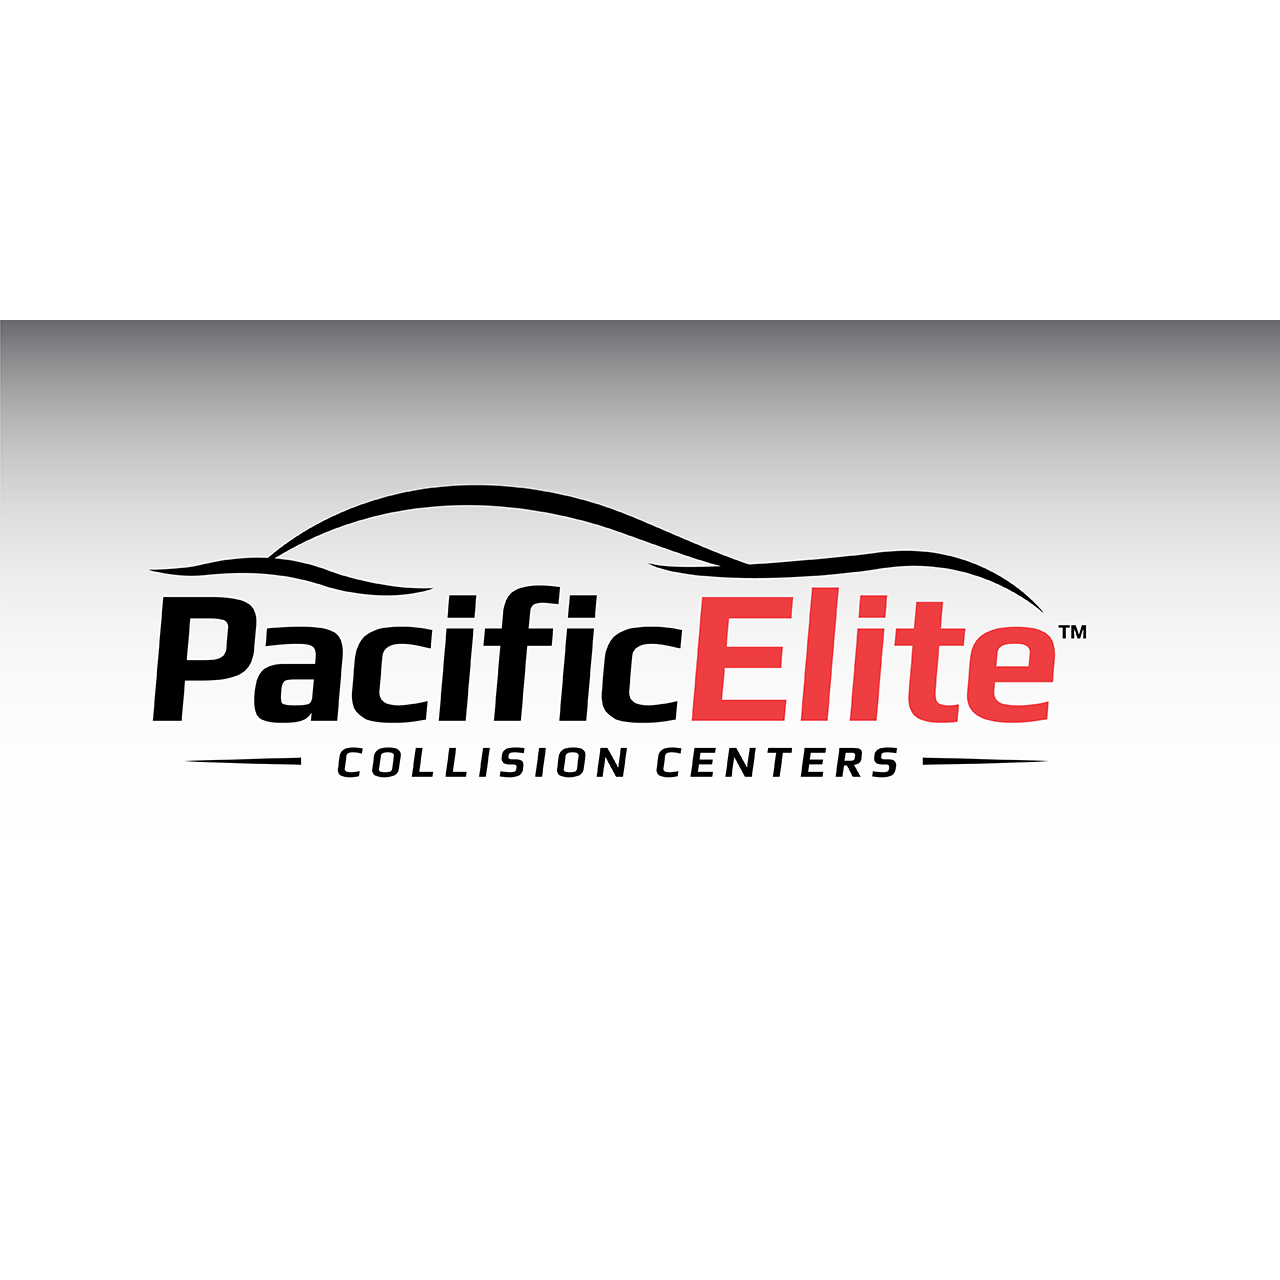 Pacific Elite Collision Centers - Downey West Logo